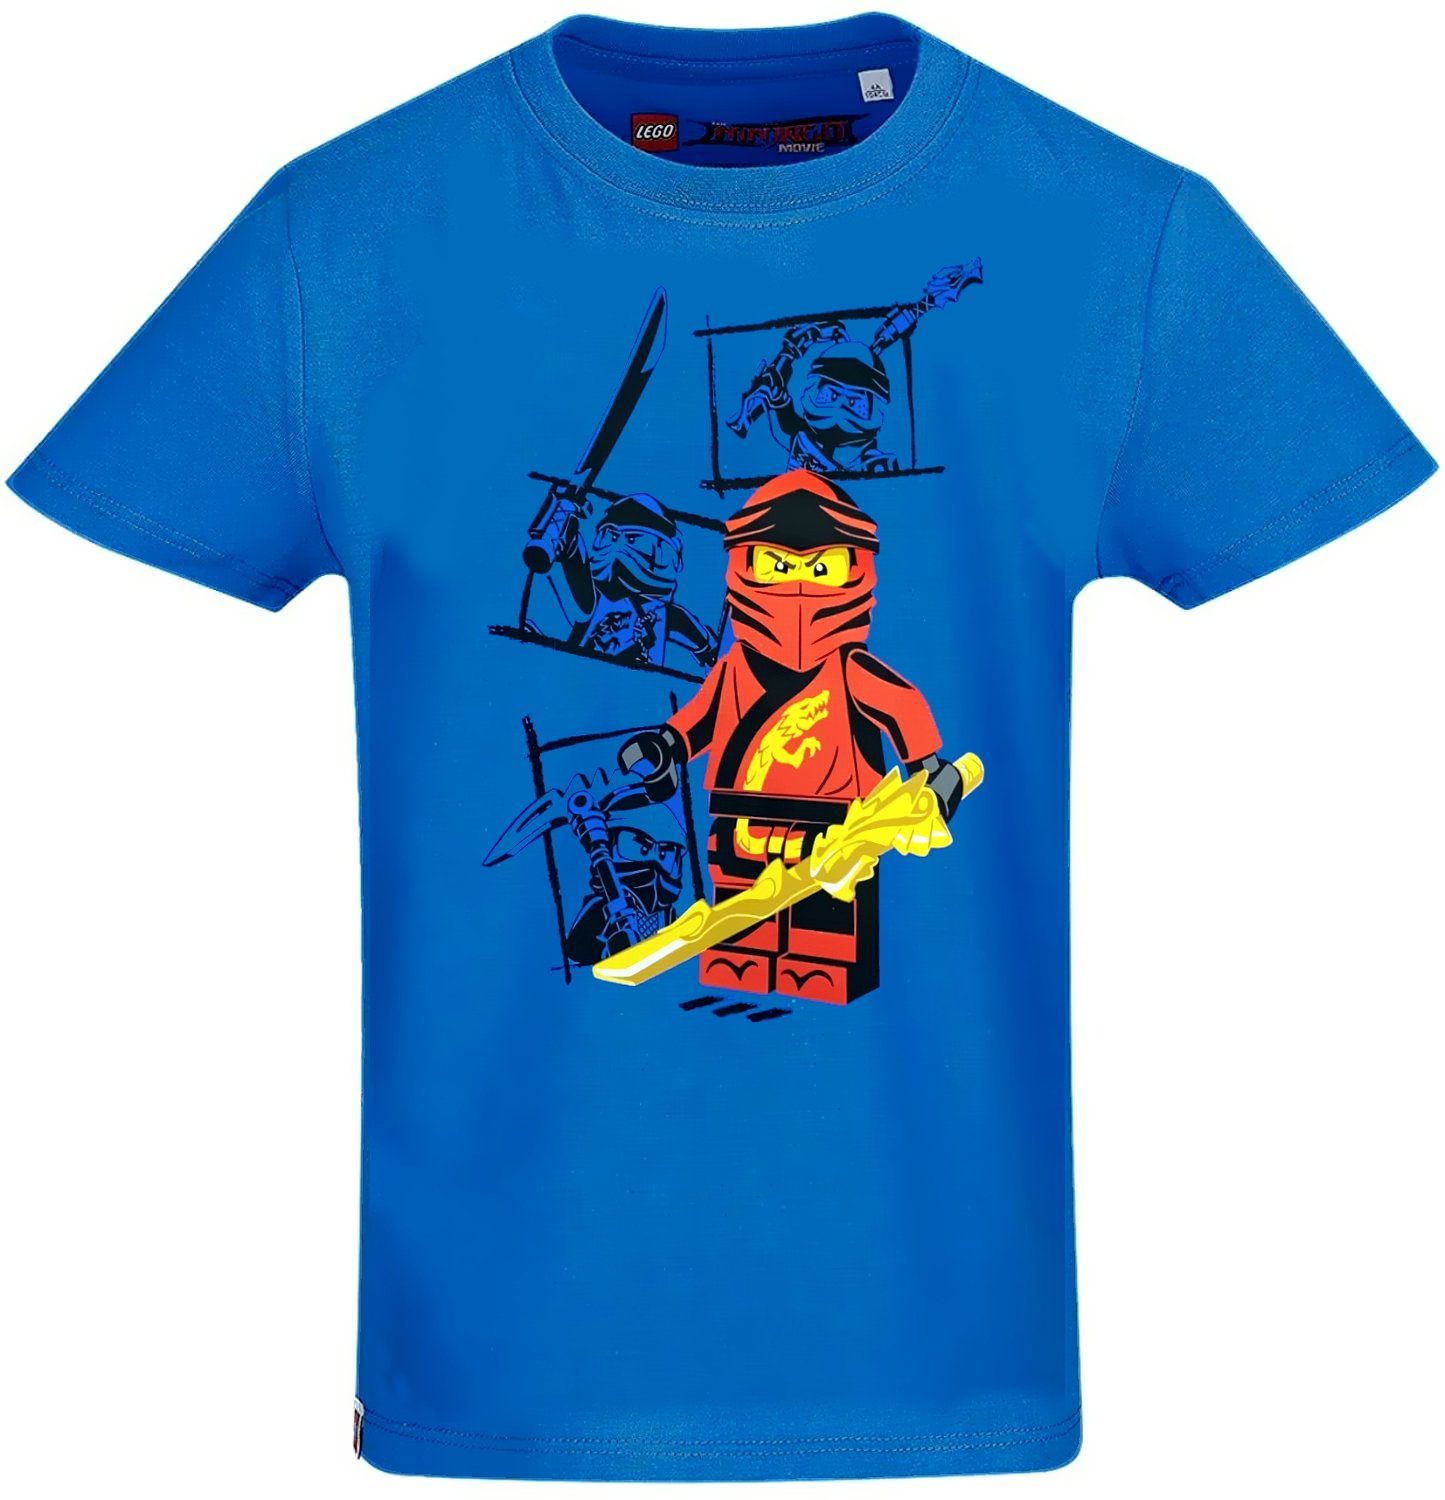 Jungen Bekleidung Shirts T-Shirts Tommy Hilfiger Jungen T-Shirt Gr DE 104 